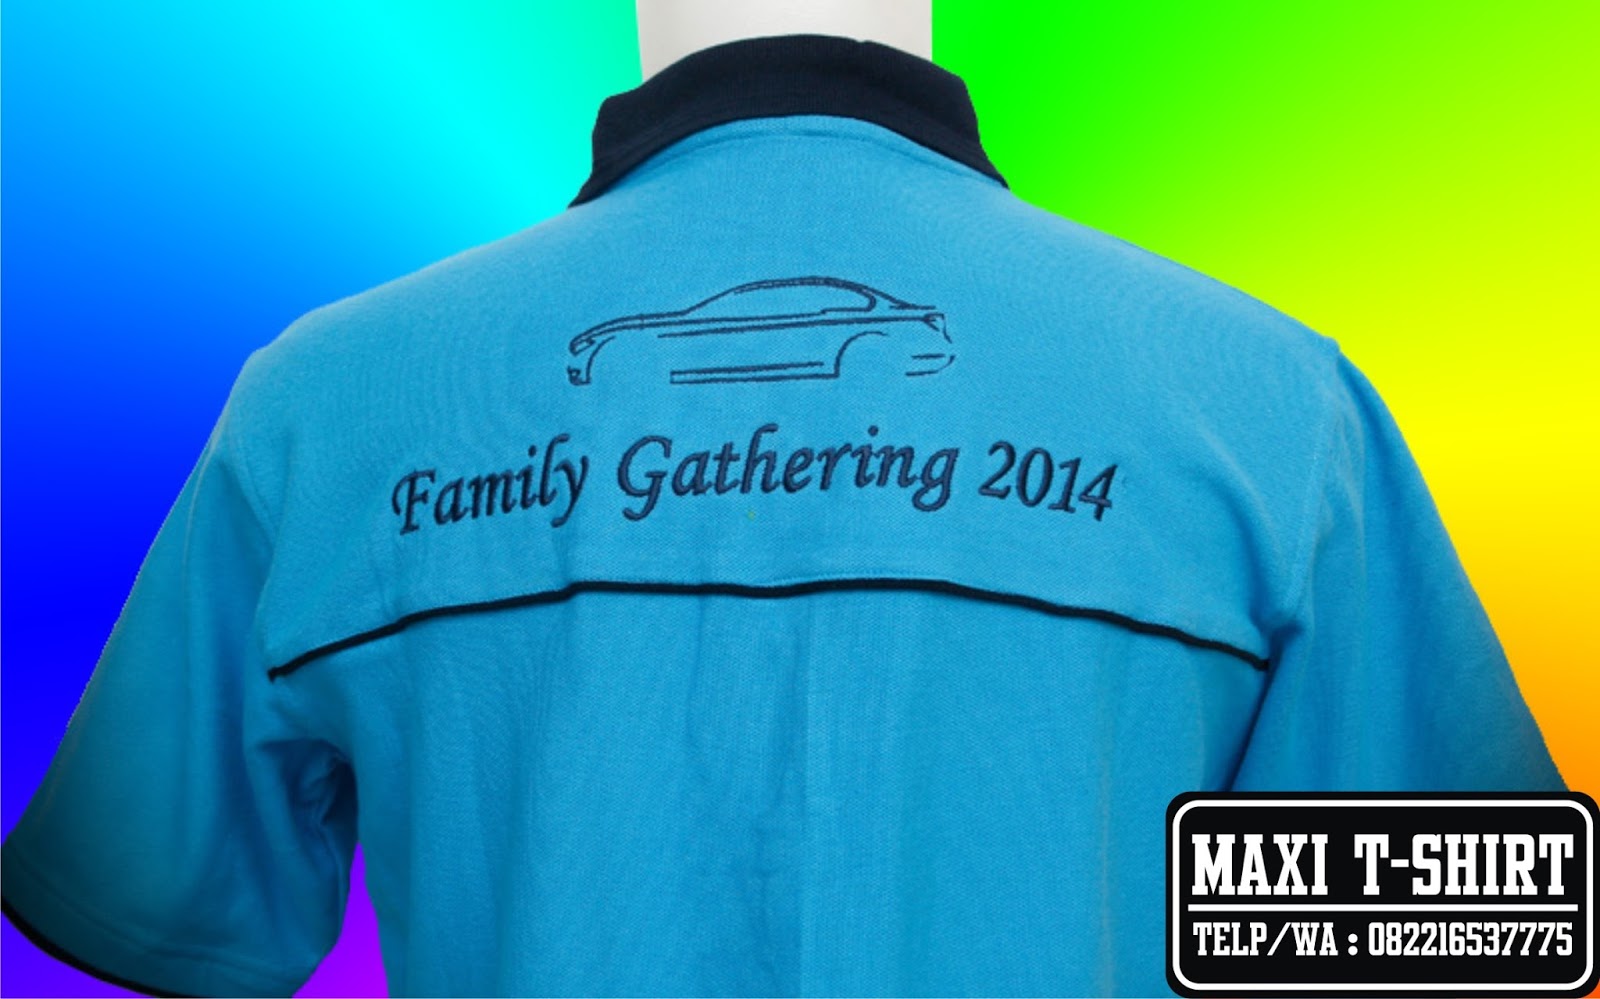 Pusat Pembuatan Kemeja Bordir Bandung Kaos Family Gathering 2014 Gambar